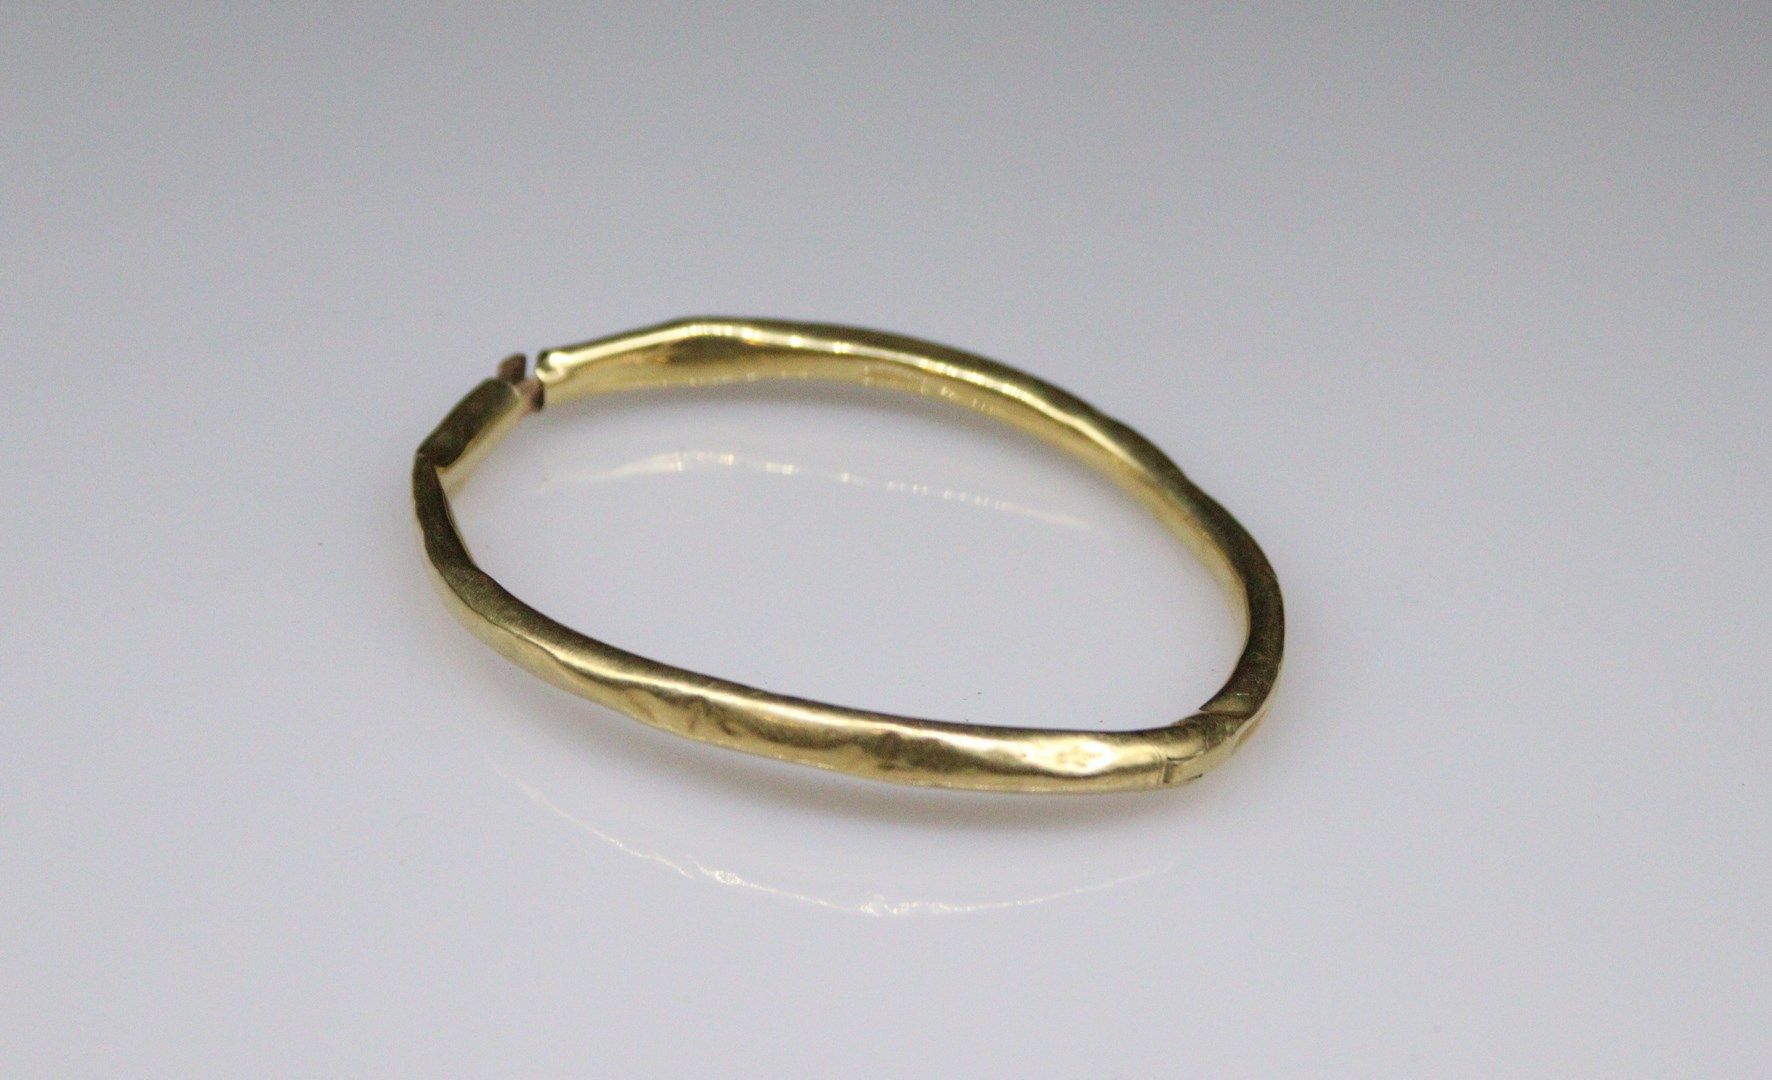 Null Bruchstück eines Armbands aus 18 Karat Gelbgold (750). 
Gewicht: 9,55 g.